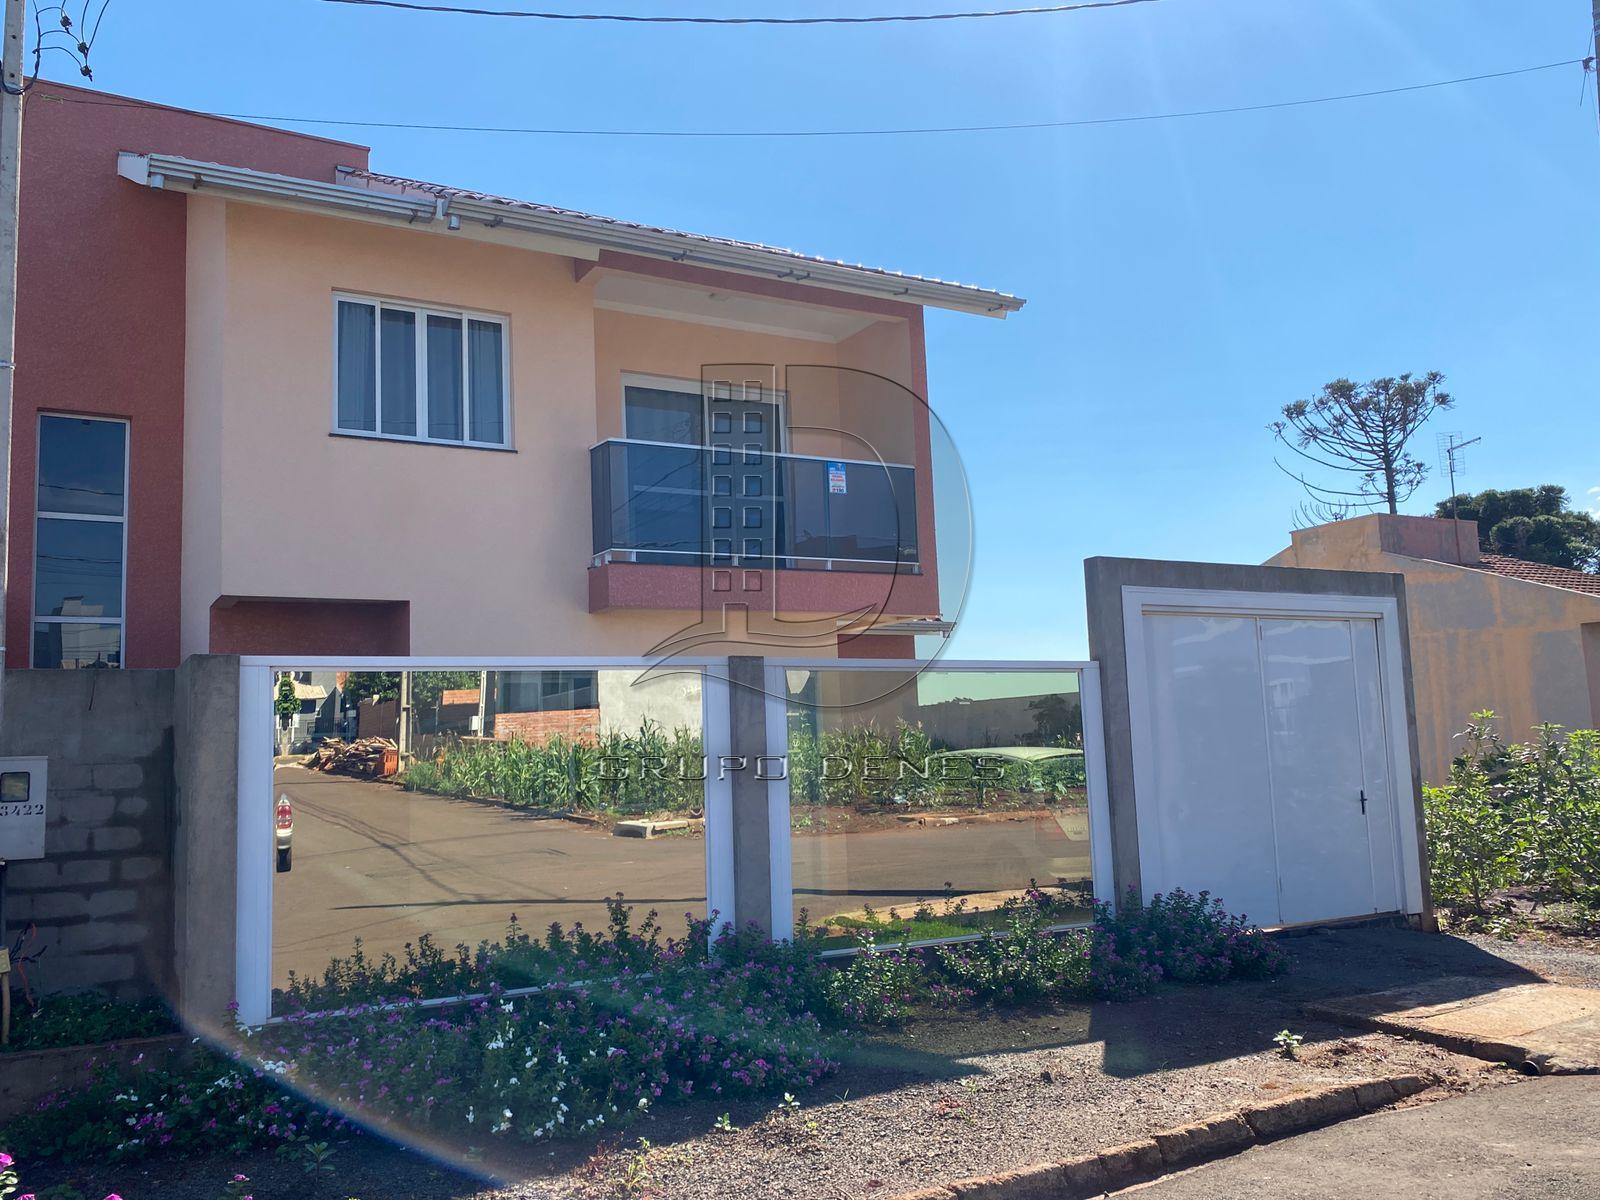 Sobrado com 3 dormitórios à venda, Loteamento Santos Dumont, MEDIANEIRA - PR